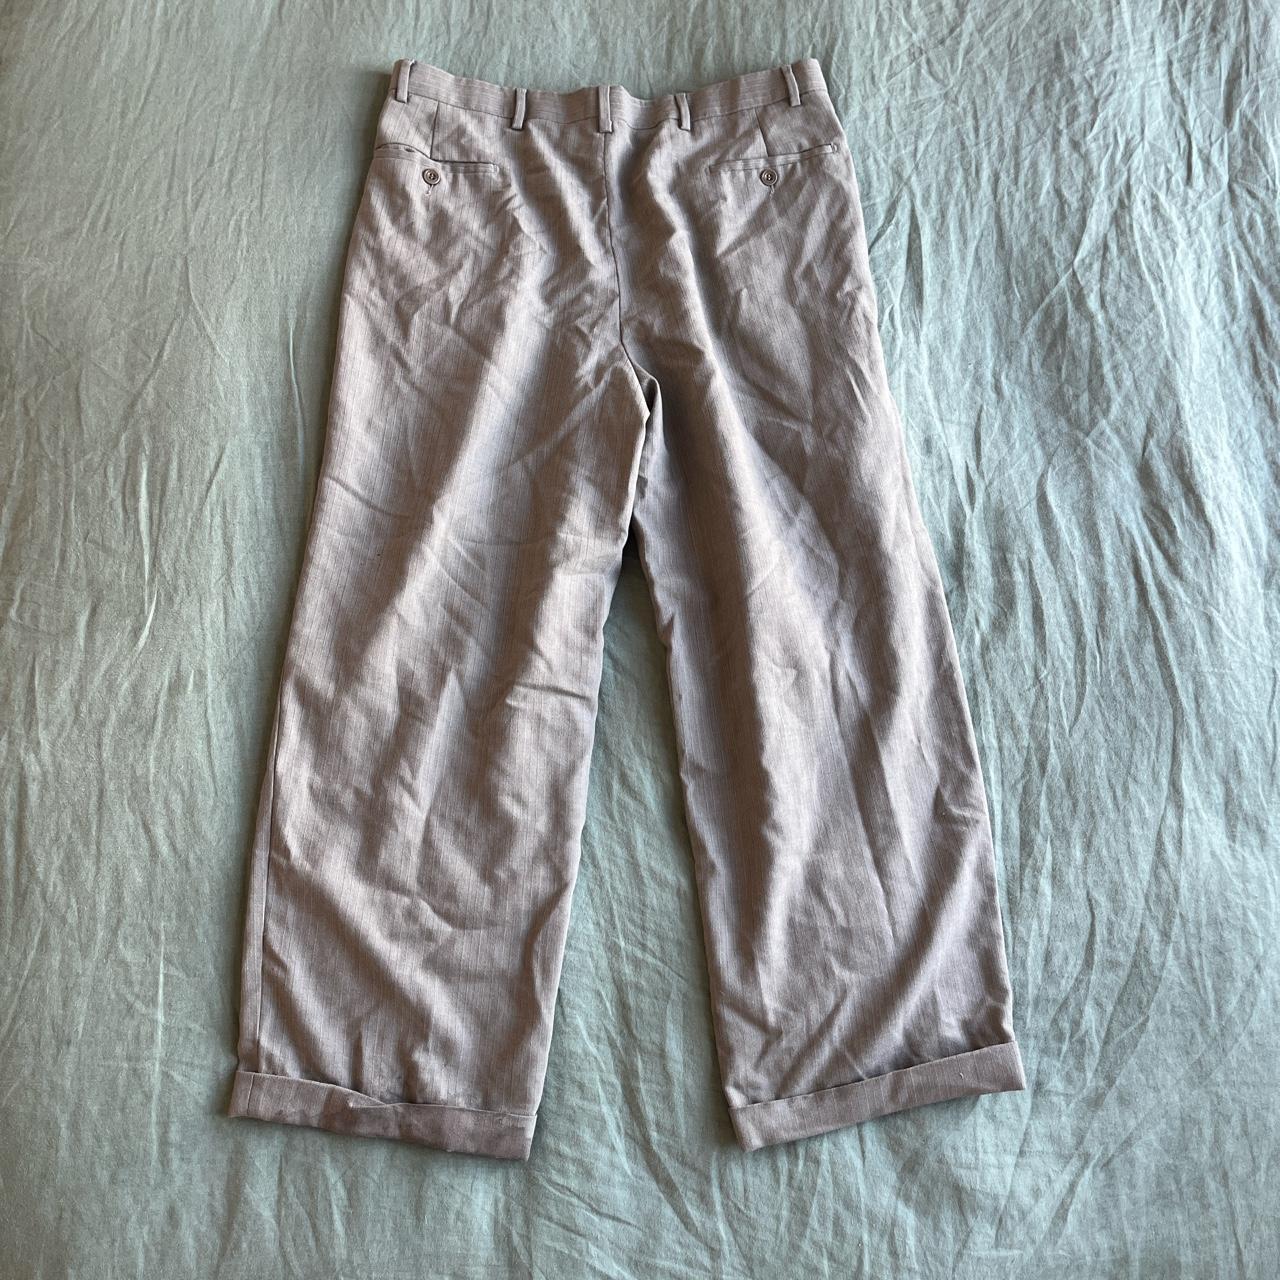 Vintage Italian grey pinstripe trousers 🔀 Baggy... - Depop